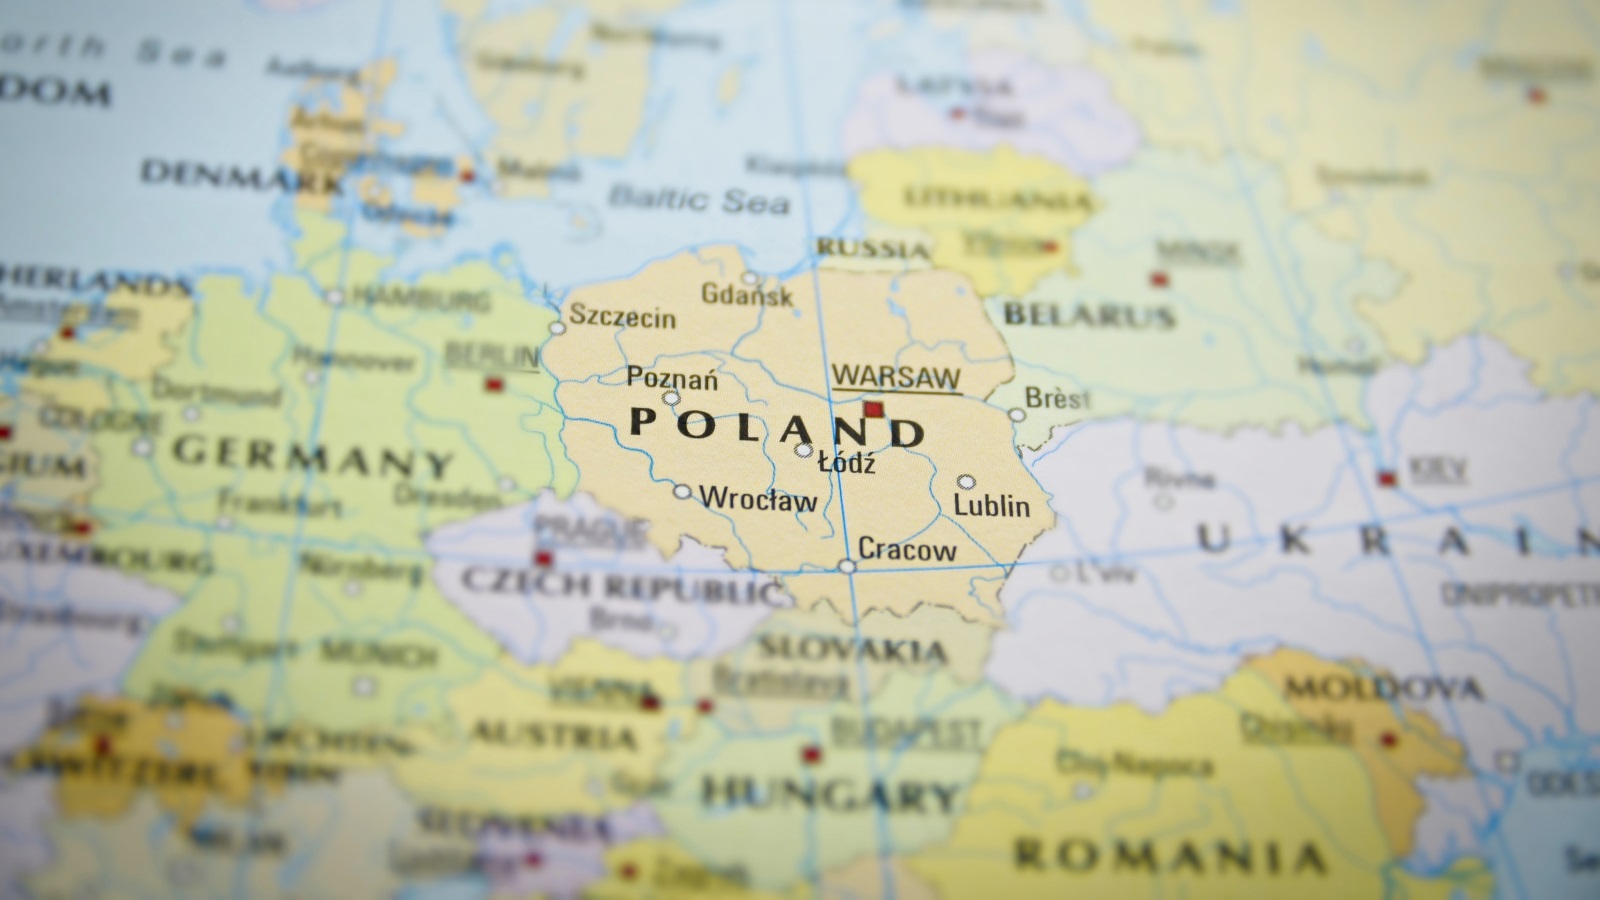  وضع بولندا شبيه بالعالم العربي من ناحية القَدَر الجيوسياسي للتبعية، فبولندا تتوسط العملاقين الجرماني والروسي، وتكتوي بنارهما في القرون الثلاثة الأخيرة